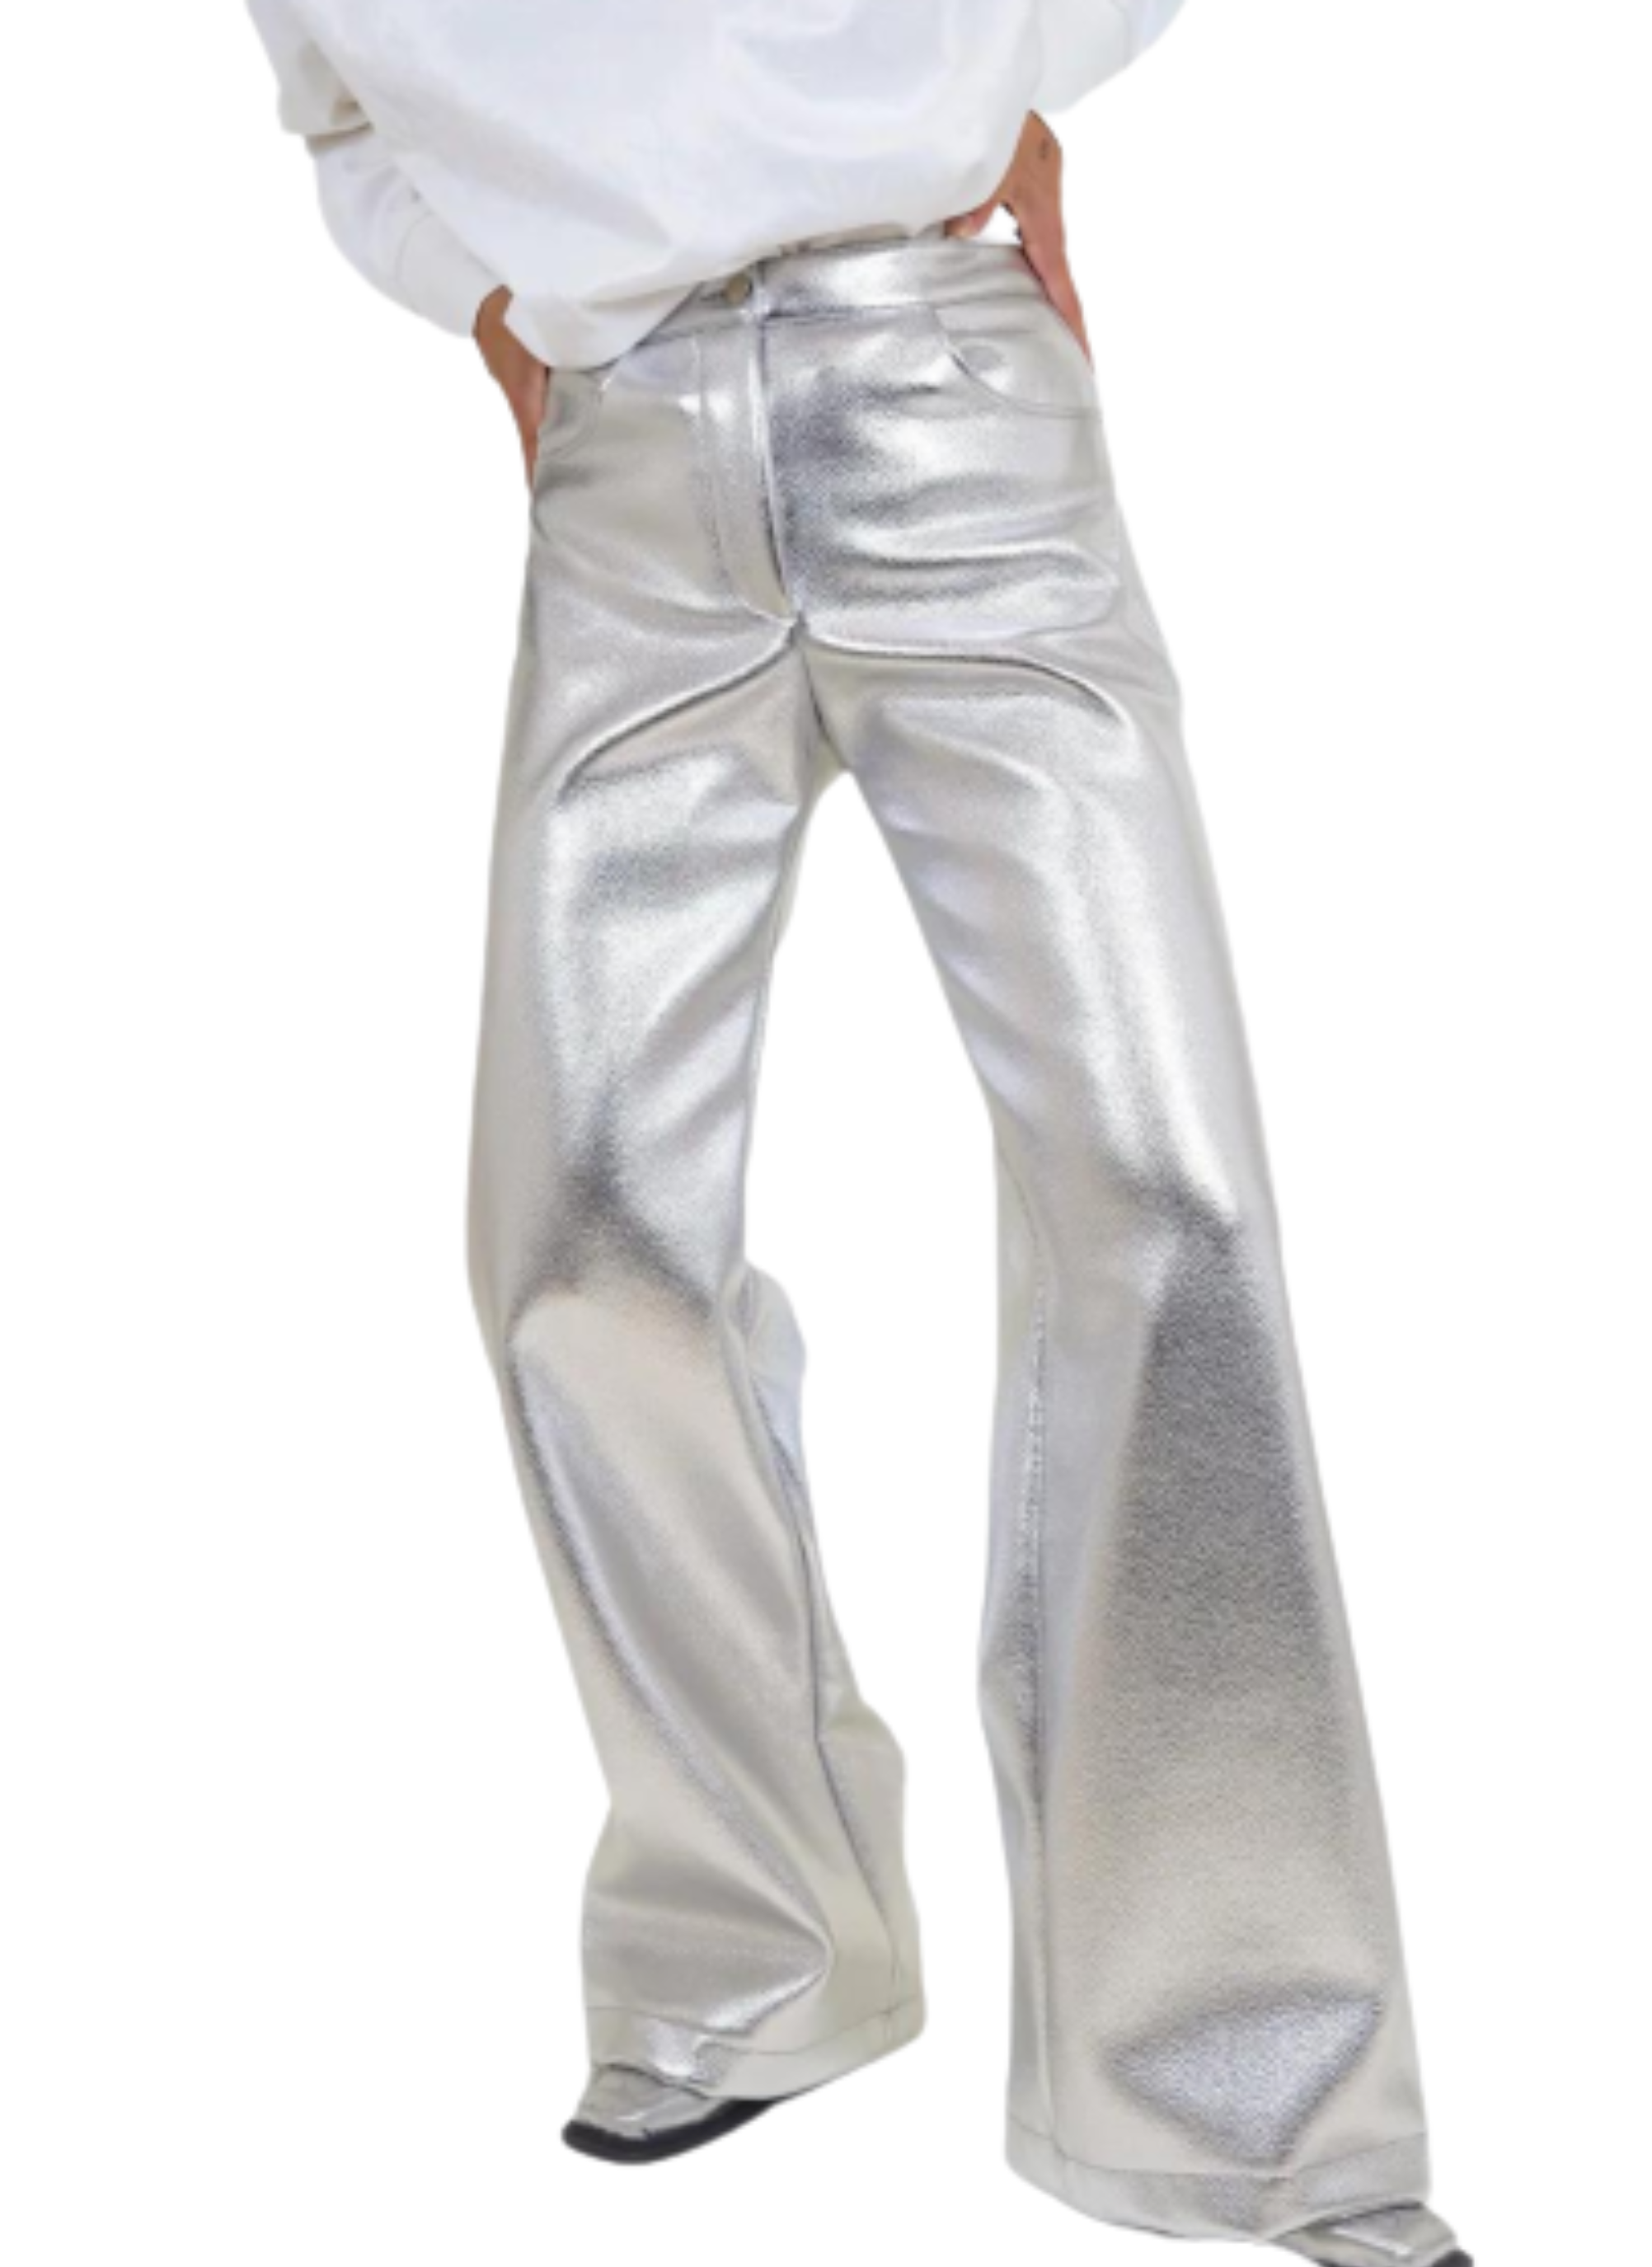 Pantalon métallique en ajustement régulier